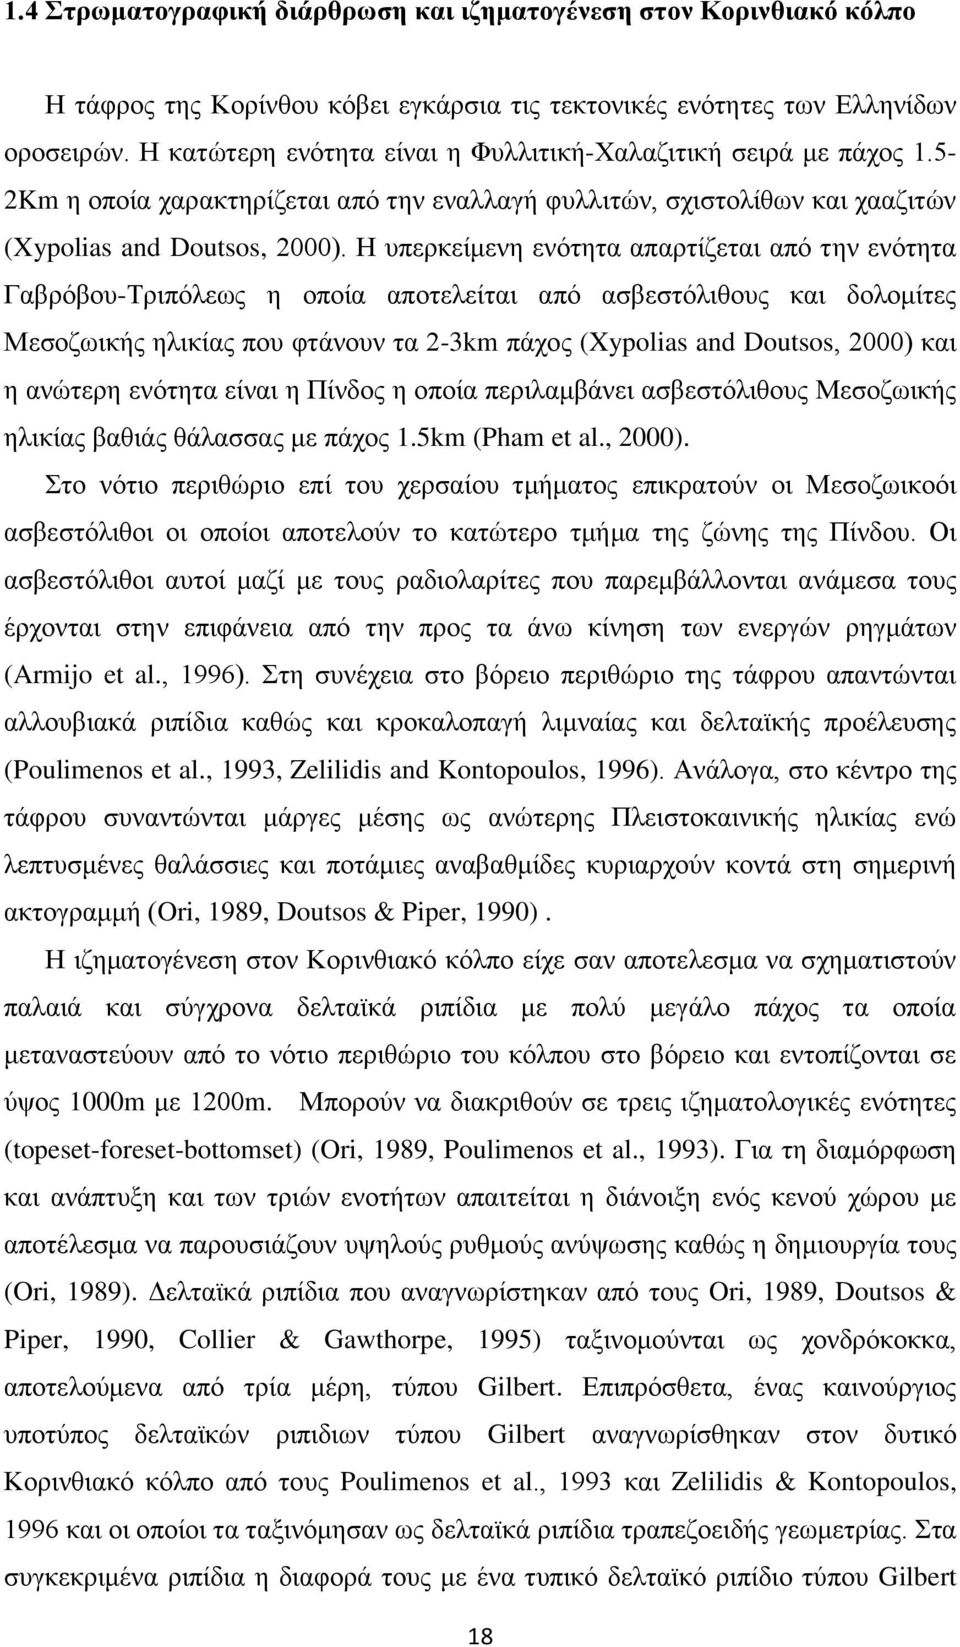 Η υπερκείμενη ενότητα απαρτίζεται από την ενότητα Γαβρόβου-Τριπόλεως η οποία αποτελείται από ασβεστόλιθους και δολομίτες Μεσοζωικής ηλικίας που φτάνουν τα 2-3km πάχος (Xypolias and Doutsos, 2000) και